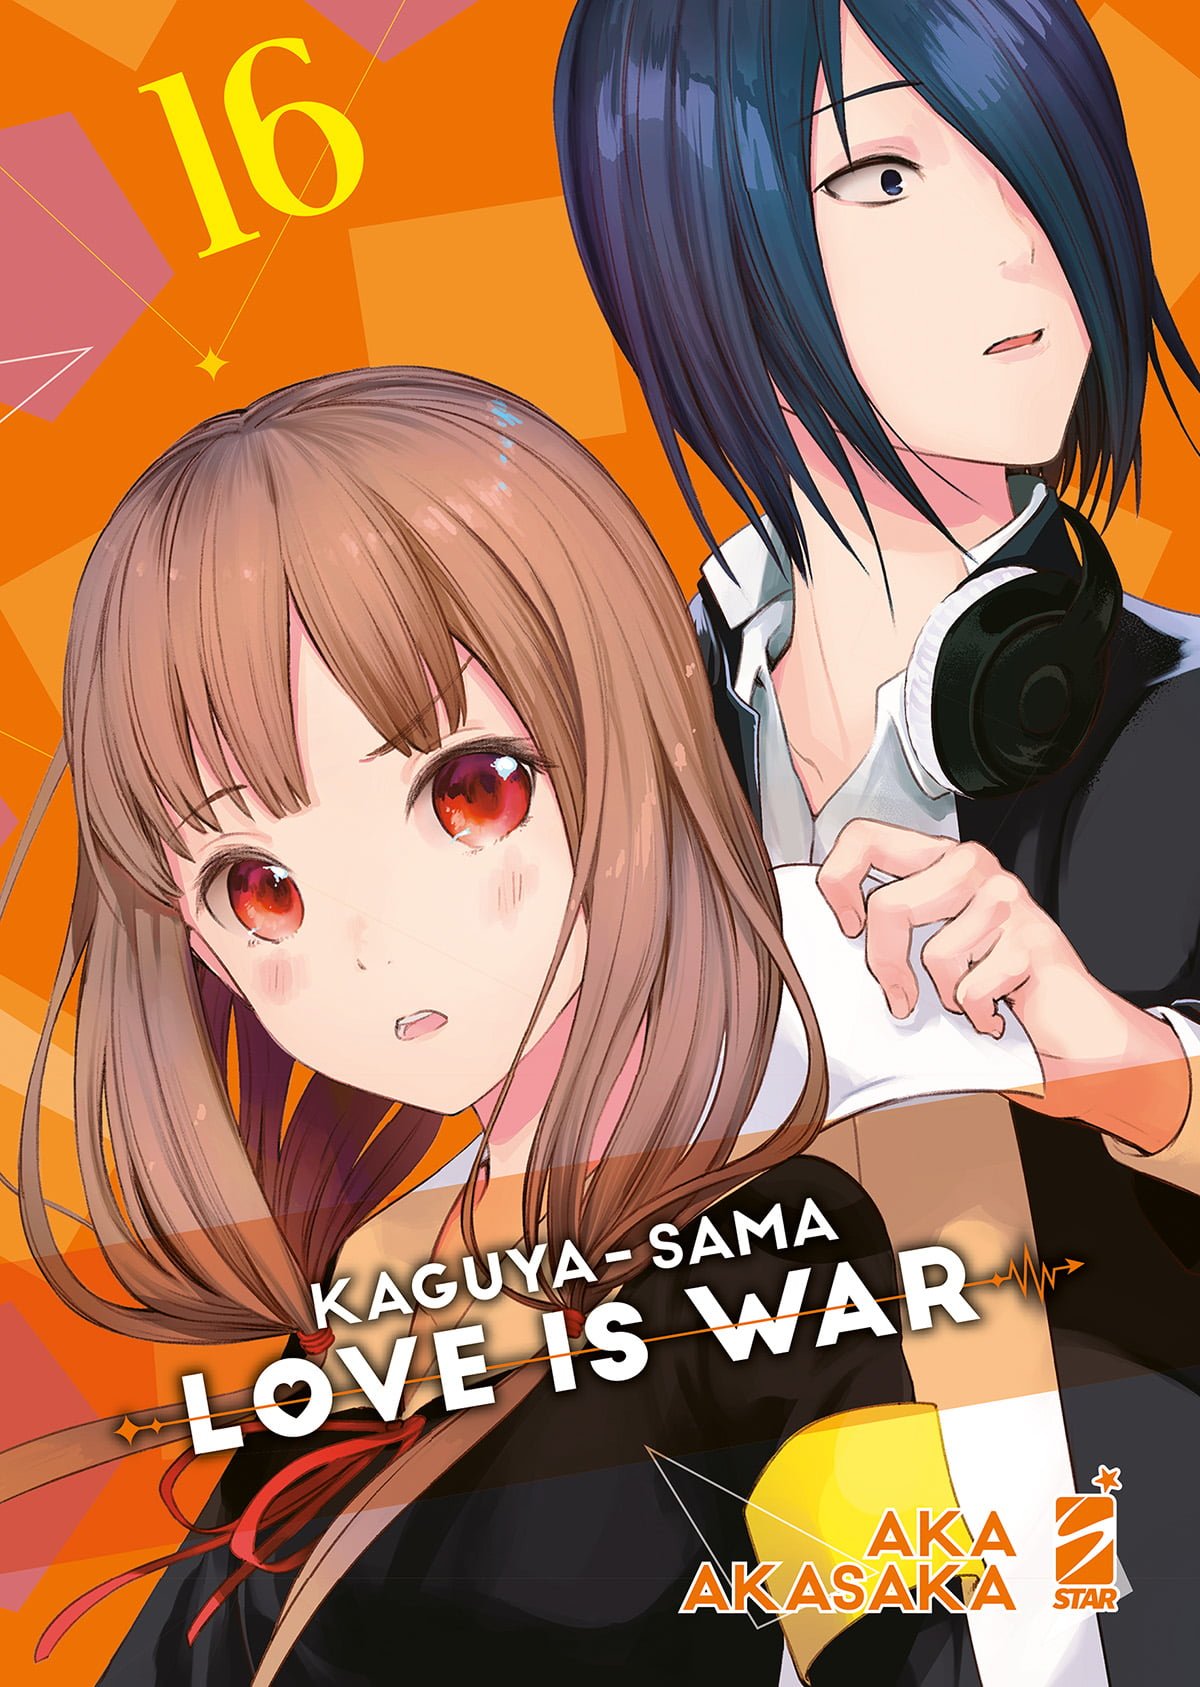 KAGUYA SAMA - LOVE IS WAR 16 FAN 277